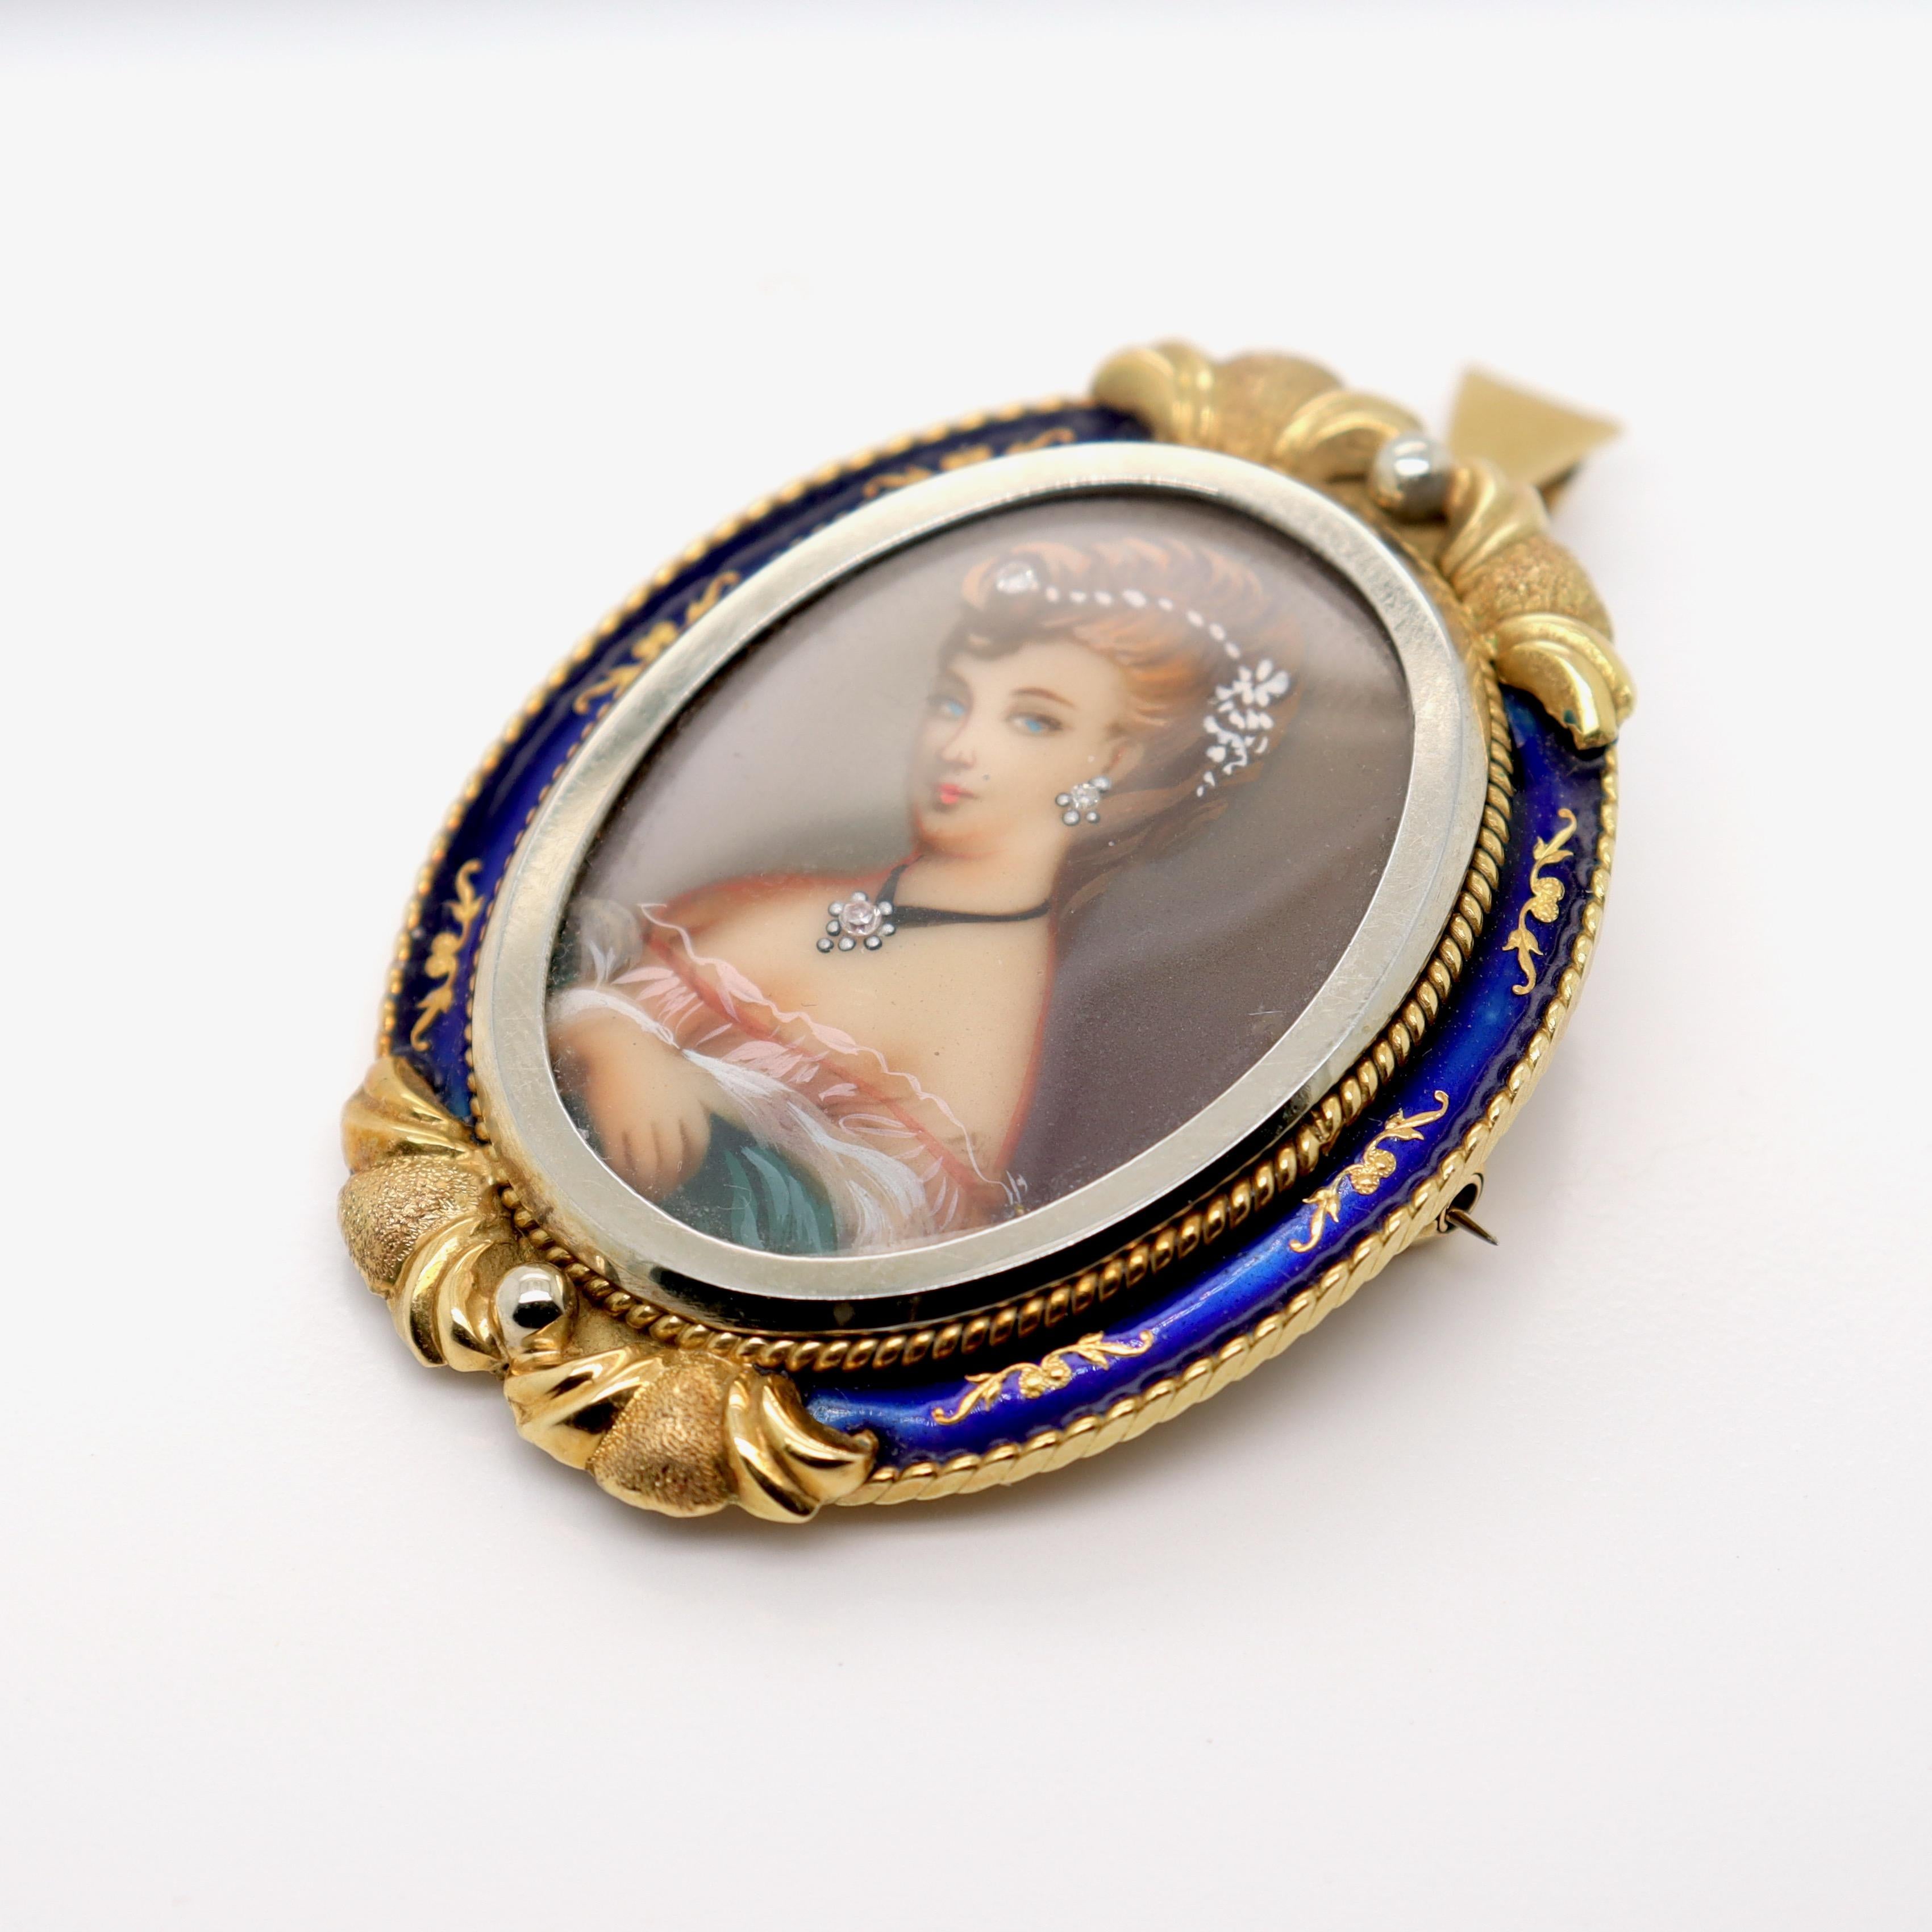 Vintage Corletto 18K Gold & Blue Enamel Portrait Miniature Brooch or Pendant For Sale 1